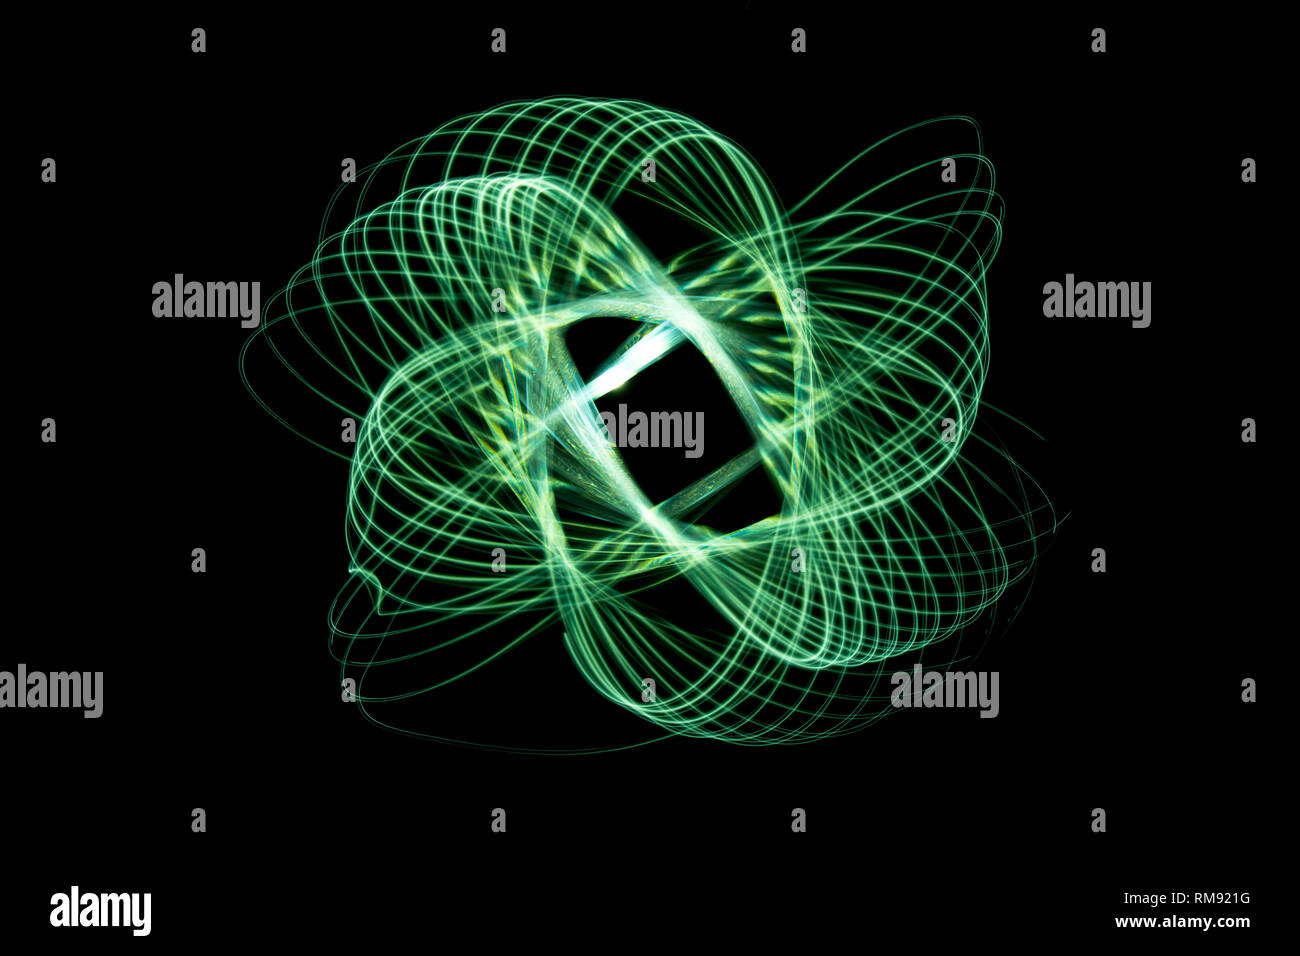 Grün farbiges Licht Malerei bilden eine etwas chaotische Spiralförmig angeordnet. Licht Flugbahn Bild der symmetrischen Natur durch die Zeit. Stockfoto